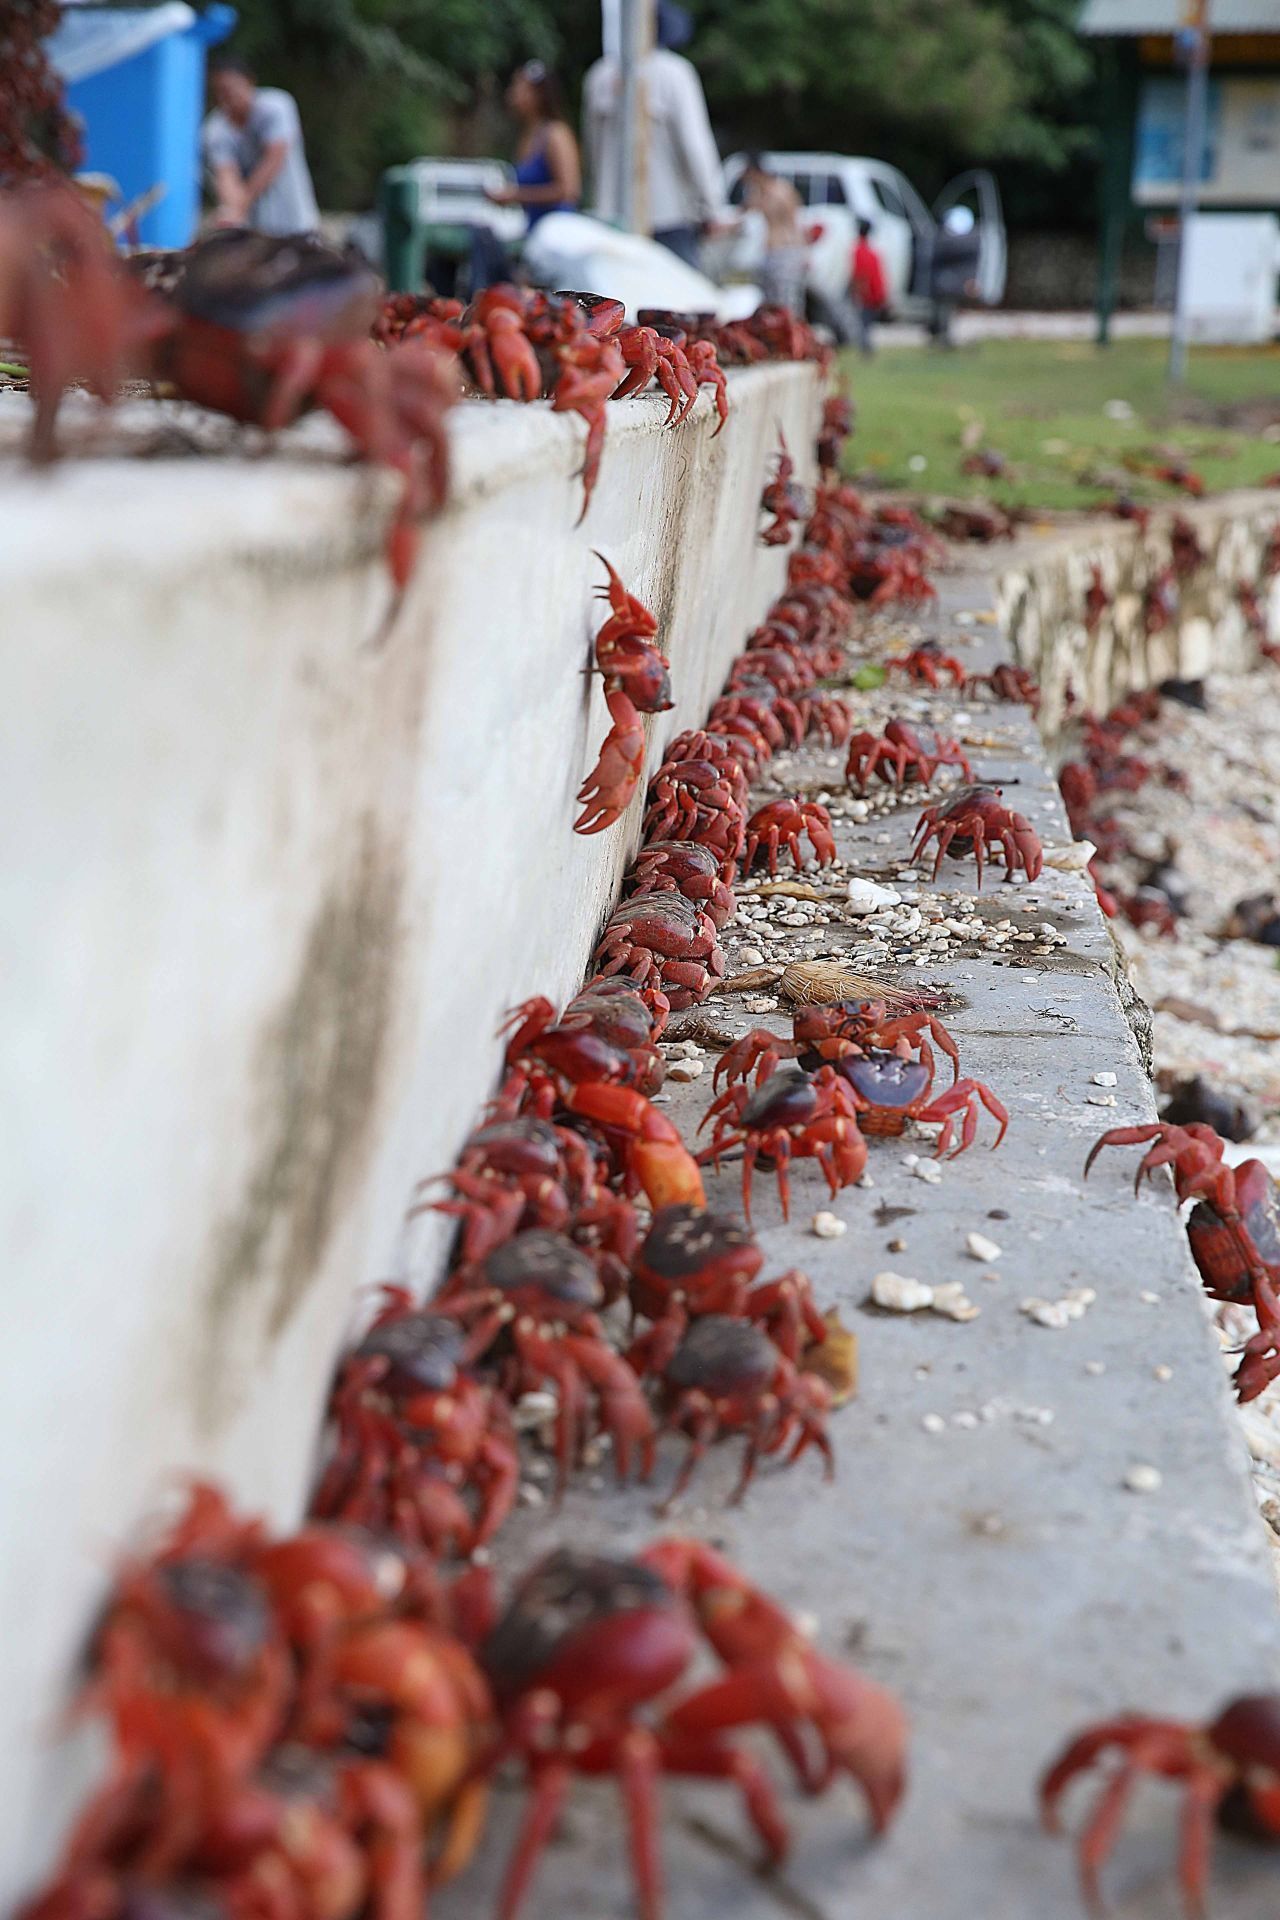 Um die Massenwanderung der Krabben mitzuerleben, reisen viele Touristen an.